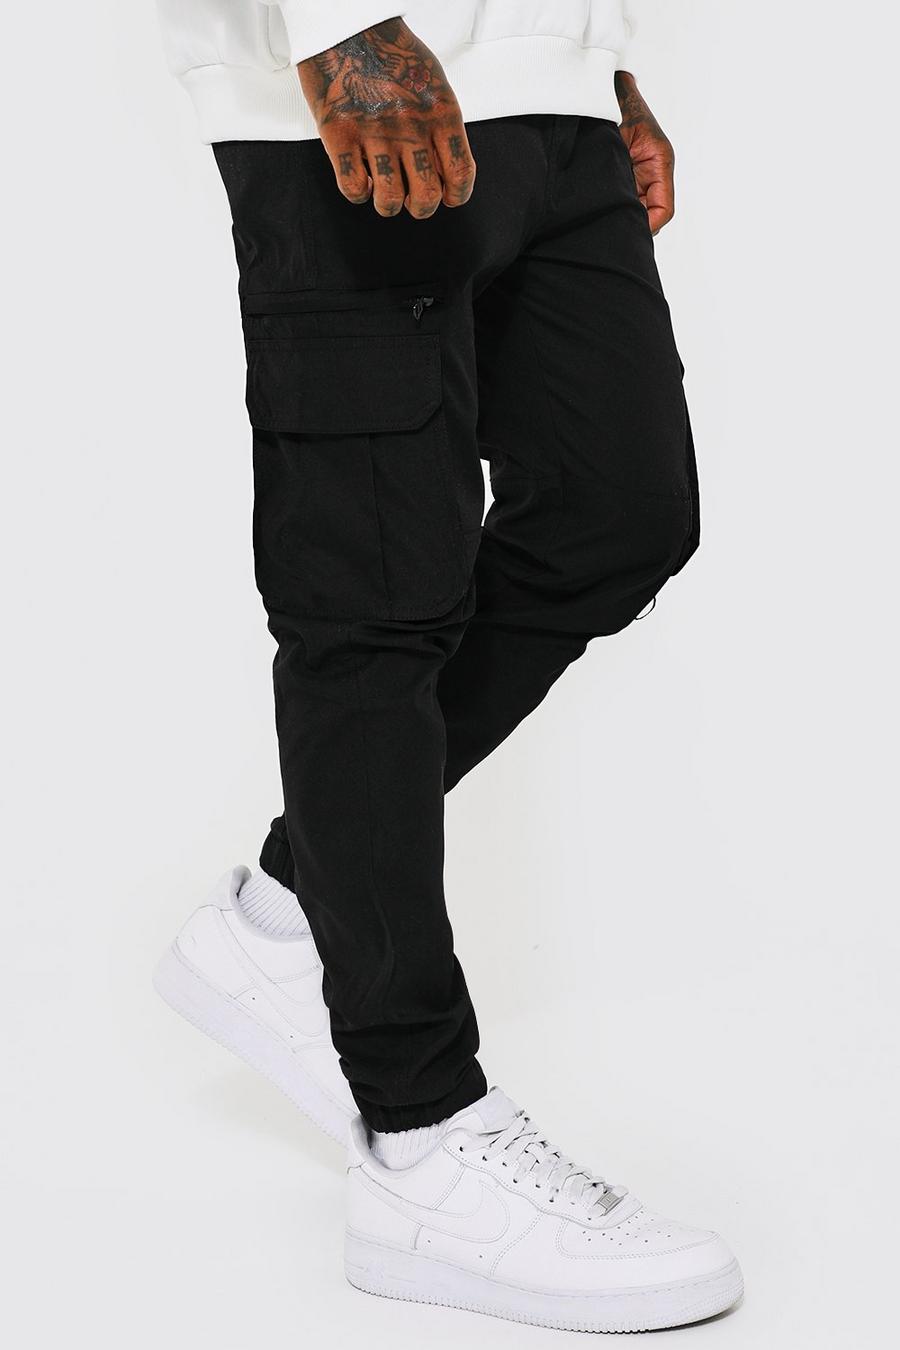 שחור מכנסי דגמ"ח נמתח עם בד פנימי בגזרה צרה מסדרת Man image number 1